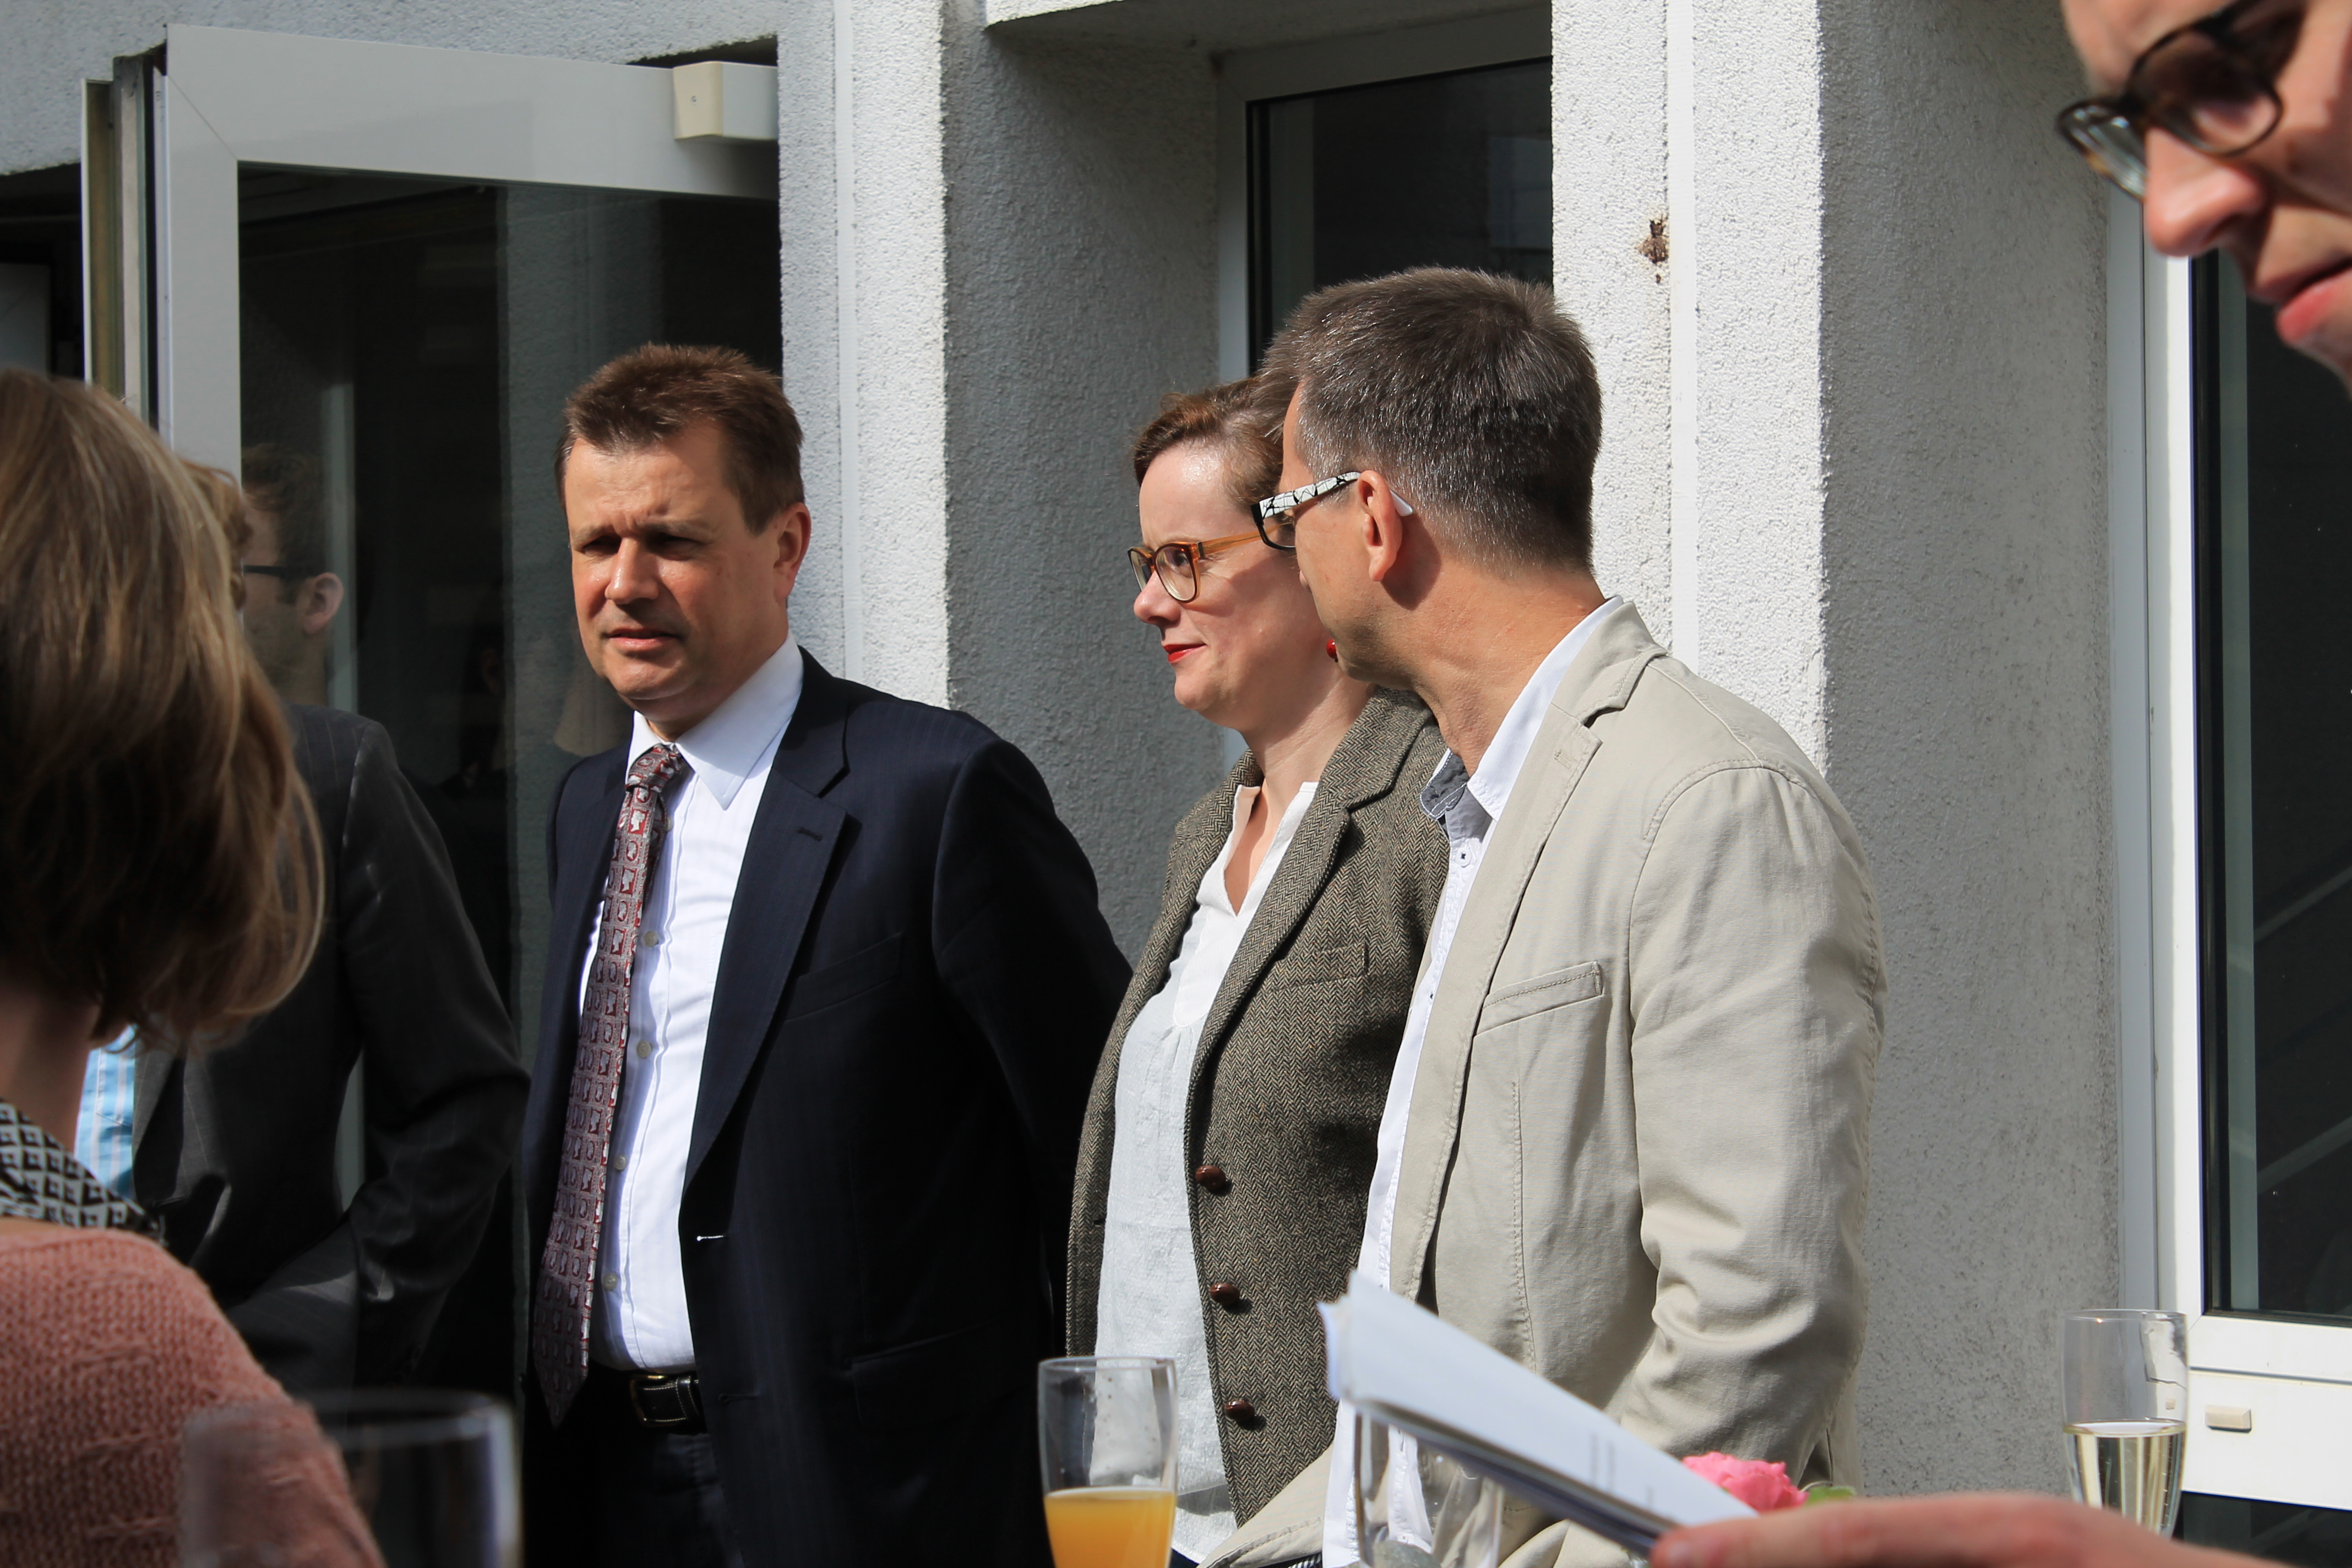 Dr. Joachim Arenth, Dr. Stefanie Freyer und Dr. Martin Klöker (v.l.n.r.) im Gespräch während der Vernissage.